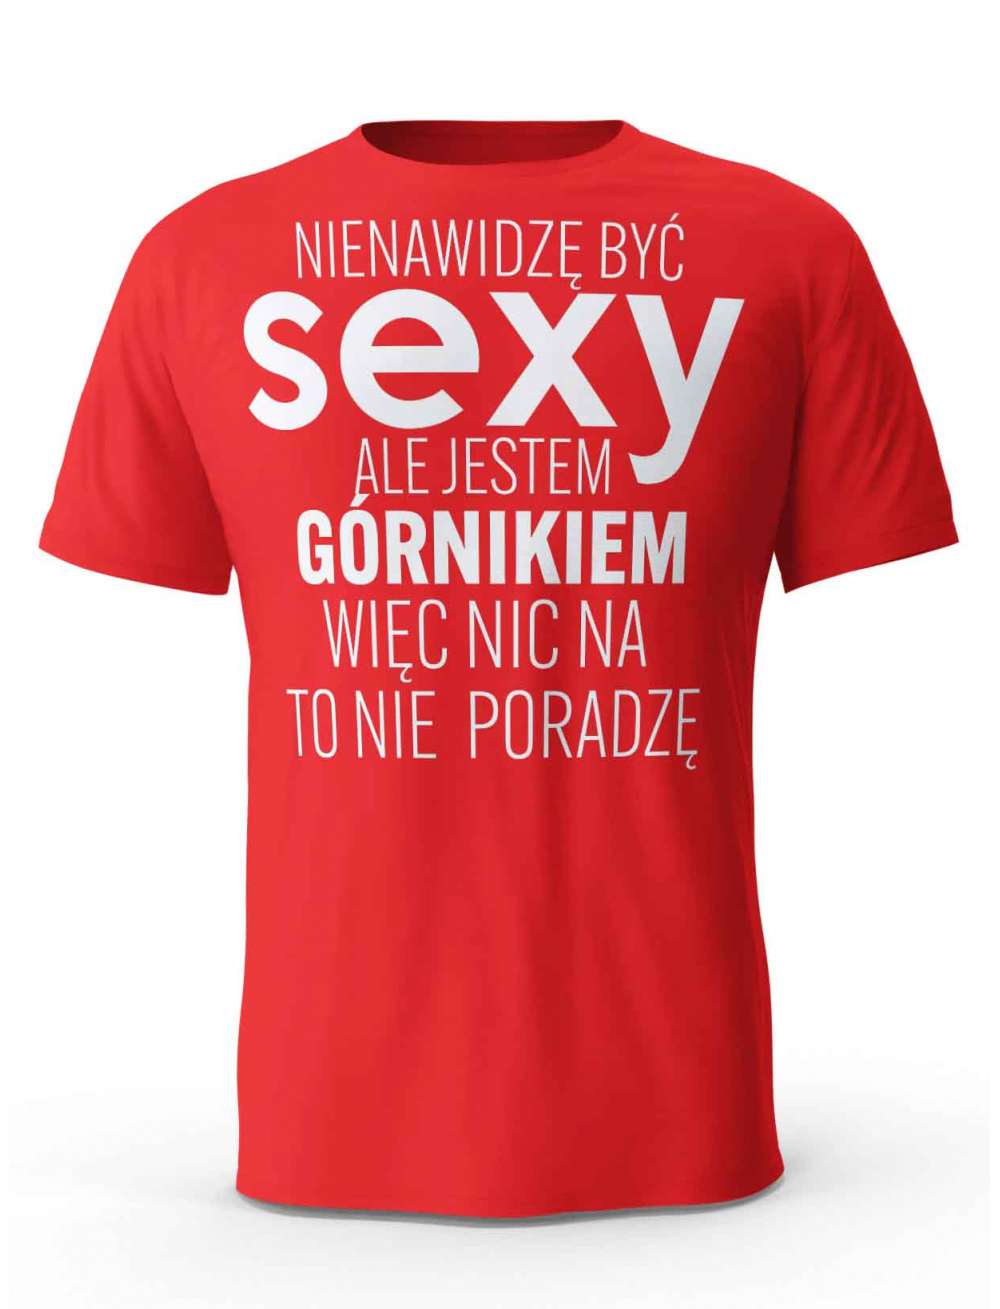 Koszulka Męska, Sexy Górnik, Prezent Dla Mężczyzny